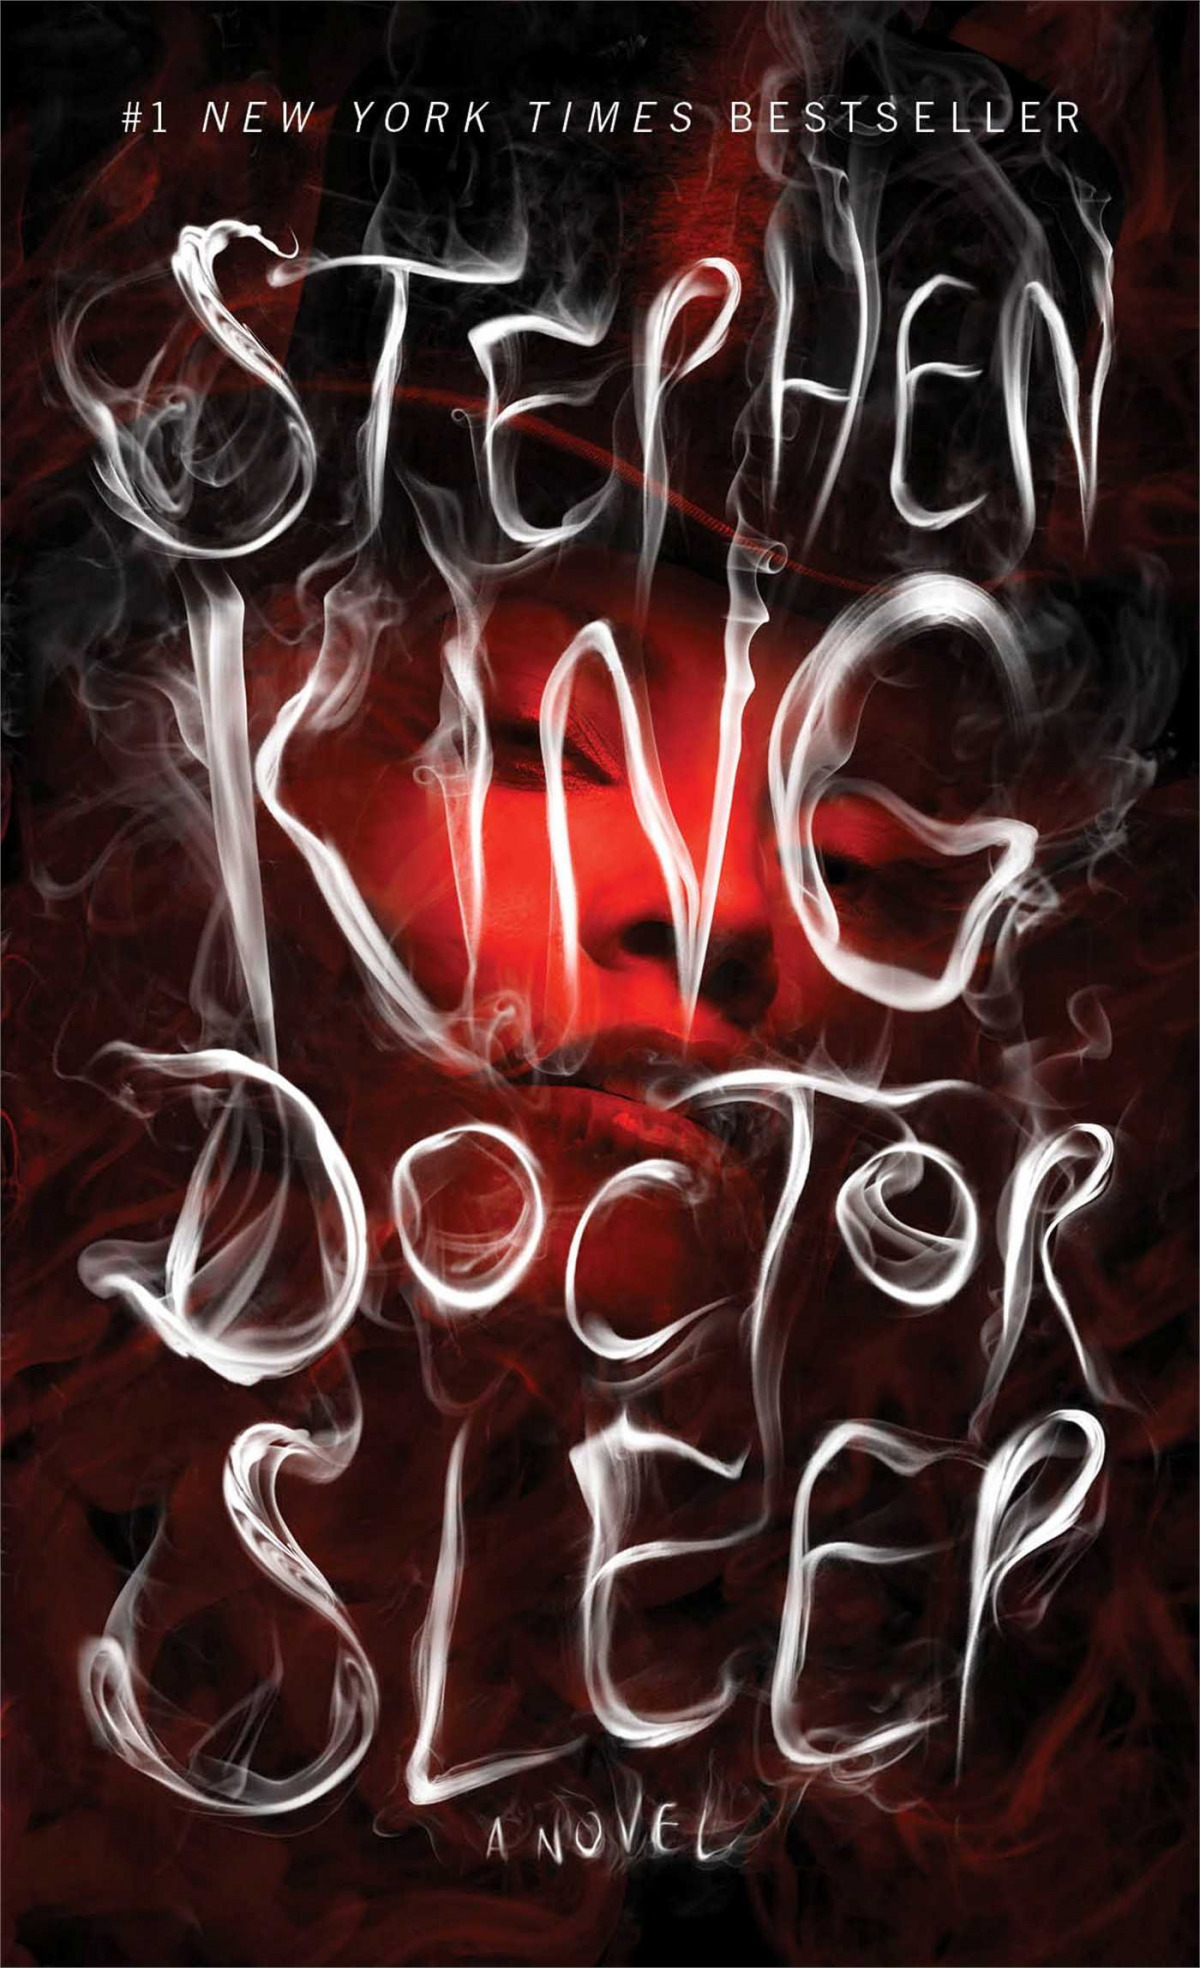 Doctor sleep - King, Stephen